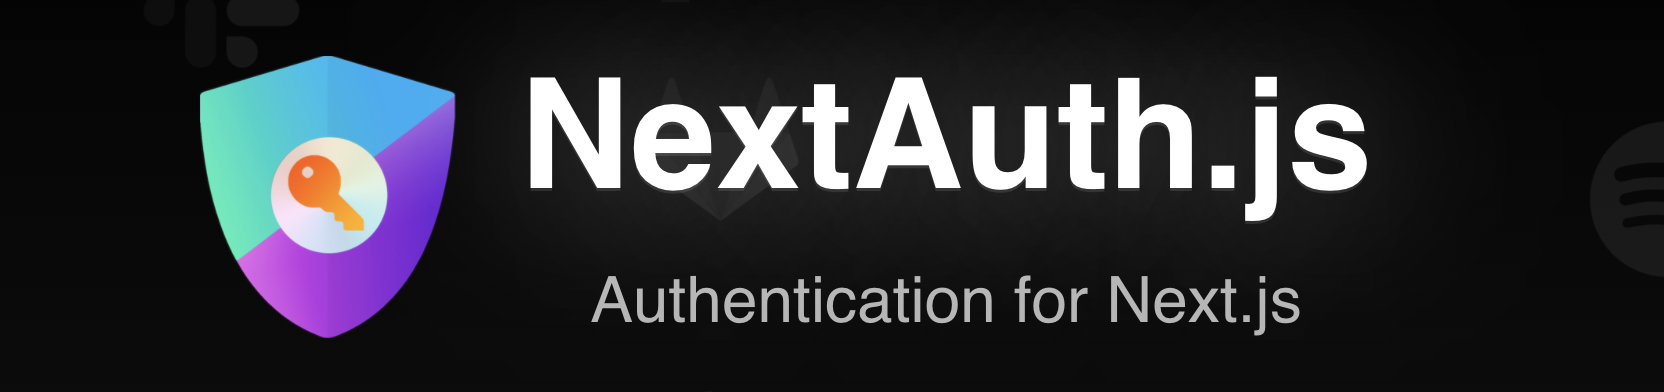 NextAuth.js logo